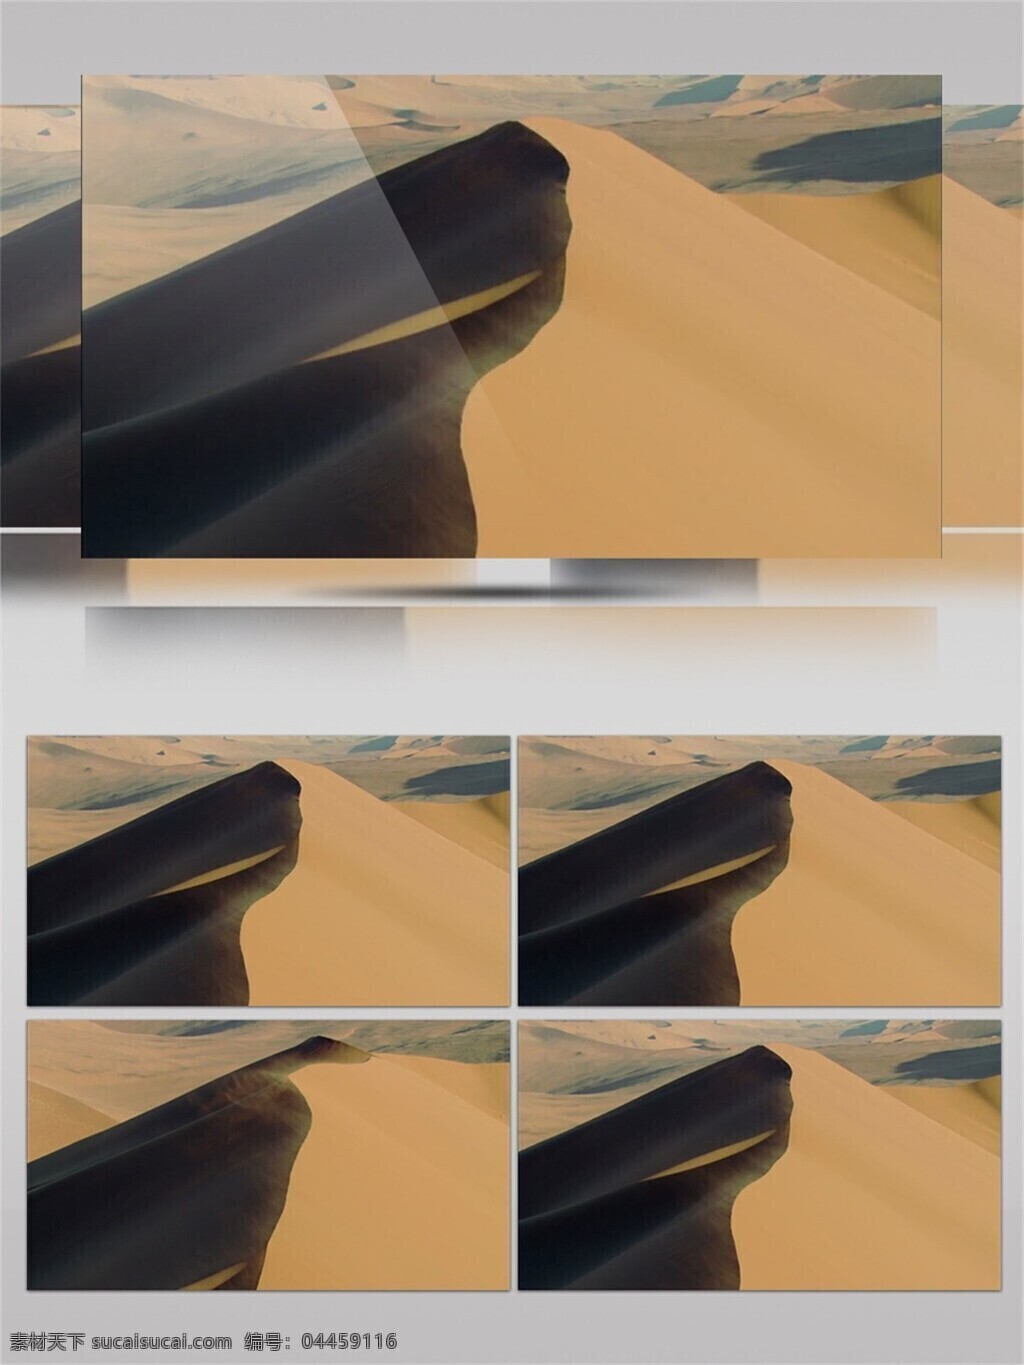 敦煌 沙漠 保护区 视频 音效 沙子 飞扬 旅游胜地 岩石 视频素材 视频音效